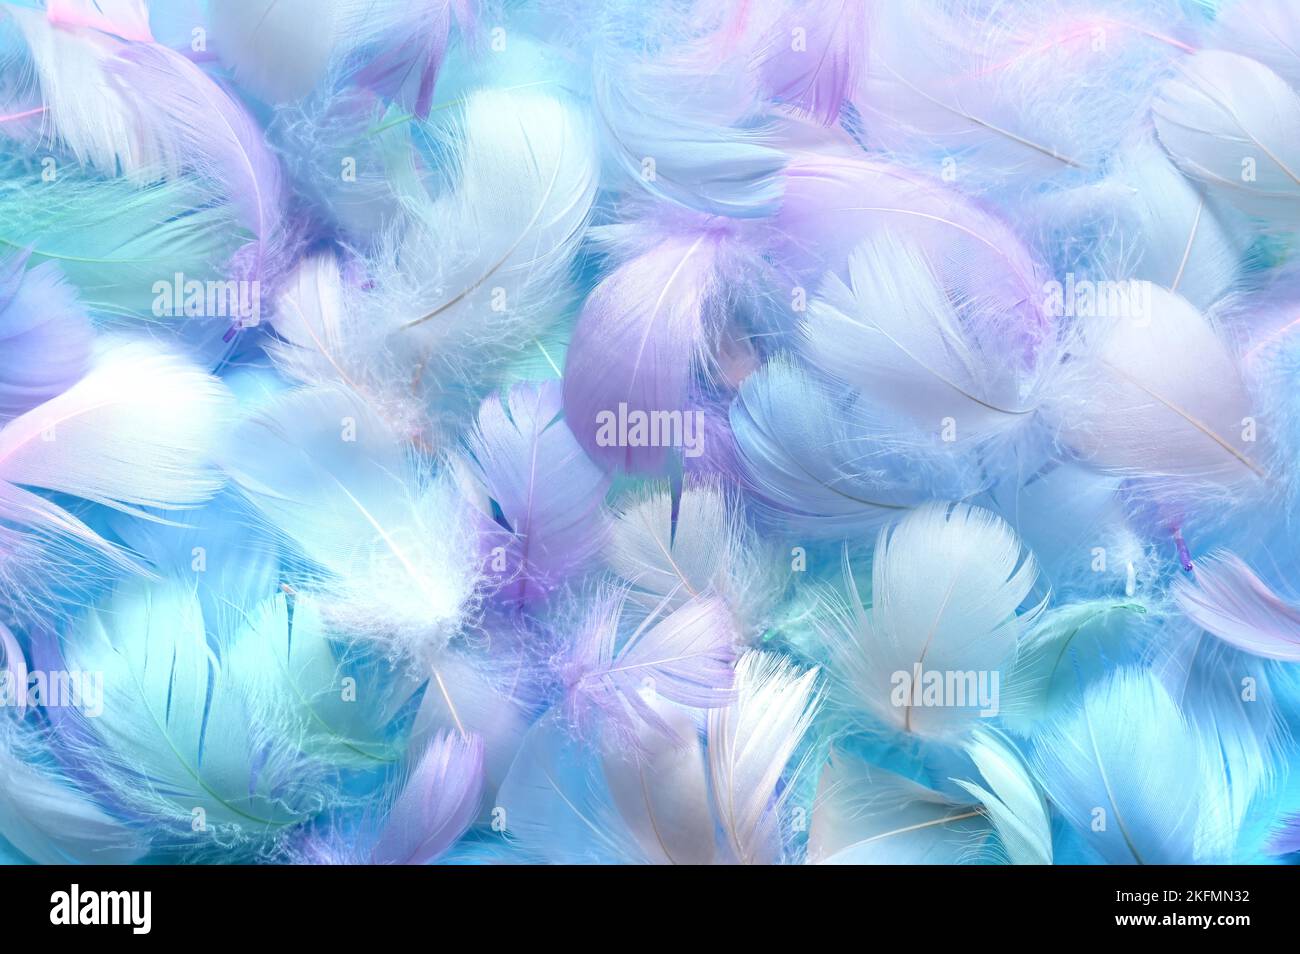 Angelic Pastell getönte weiße Feder Hintergrund - kleine flauschige blaue Federn zufällig verstreut bilden einen Hintergrund. Stockfoto